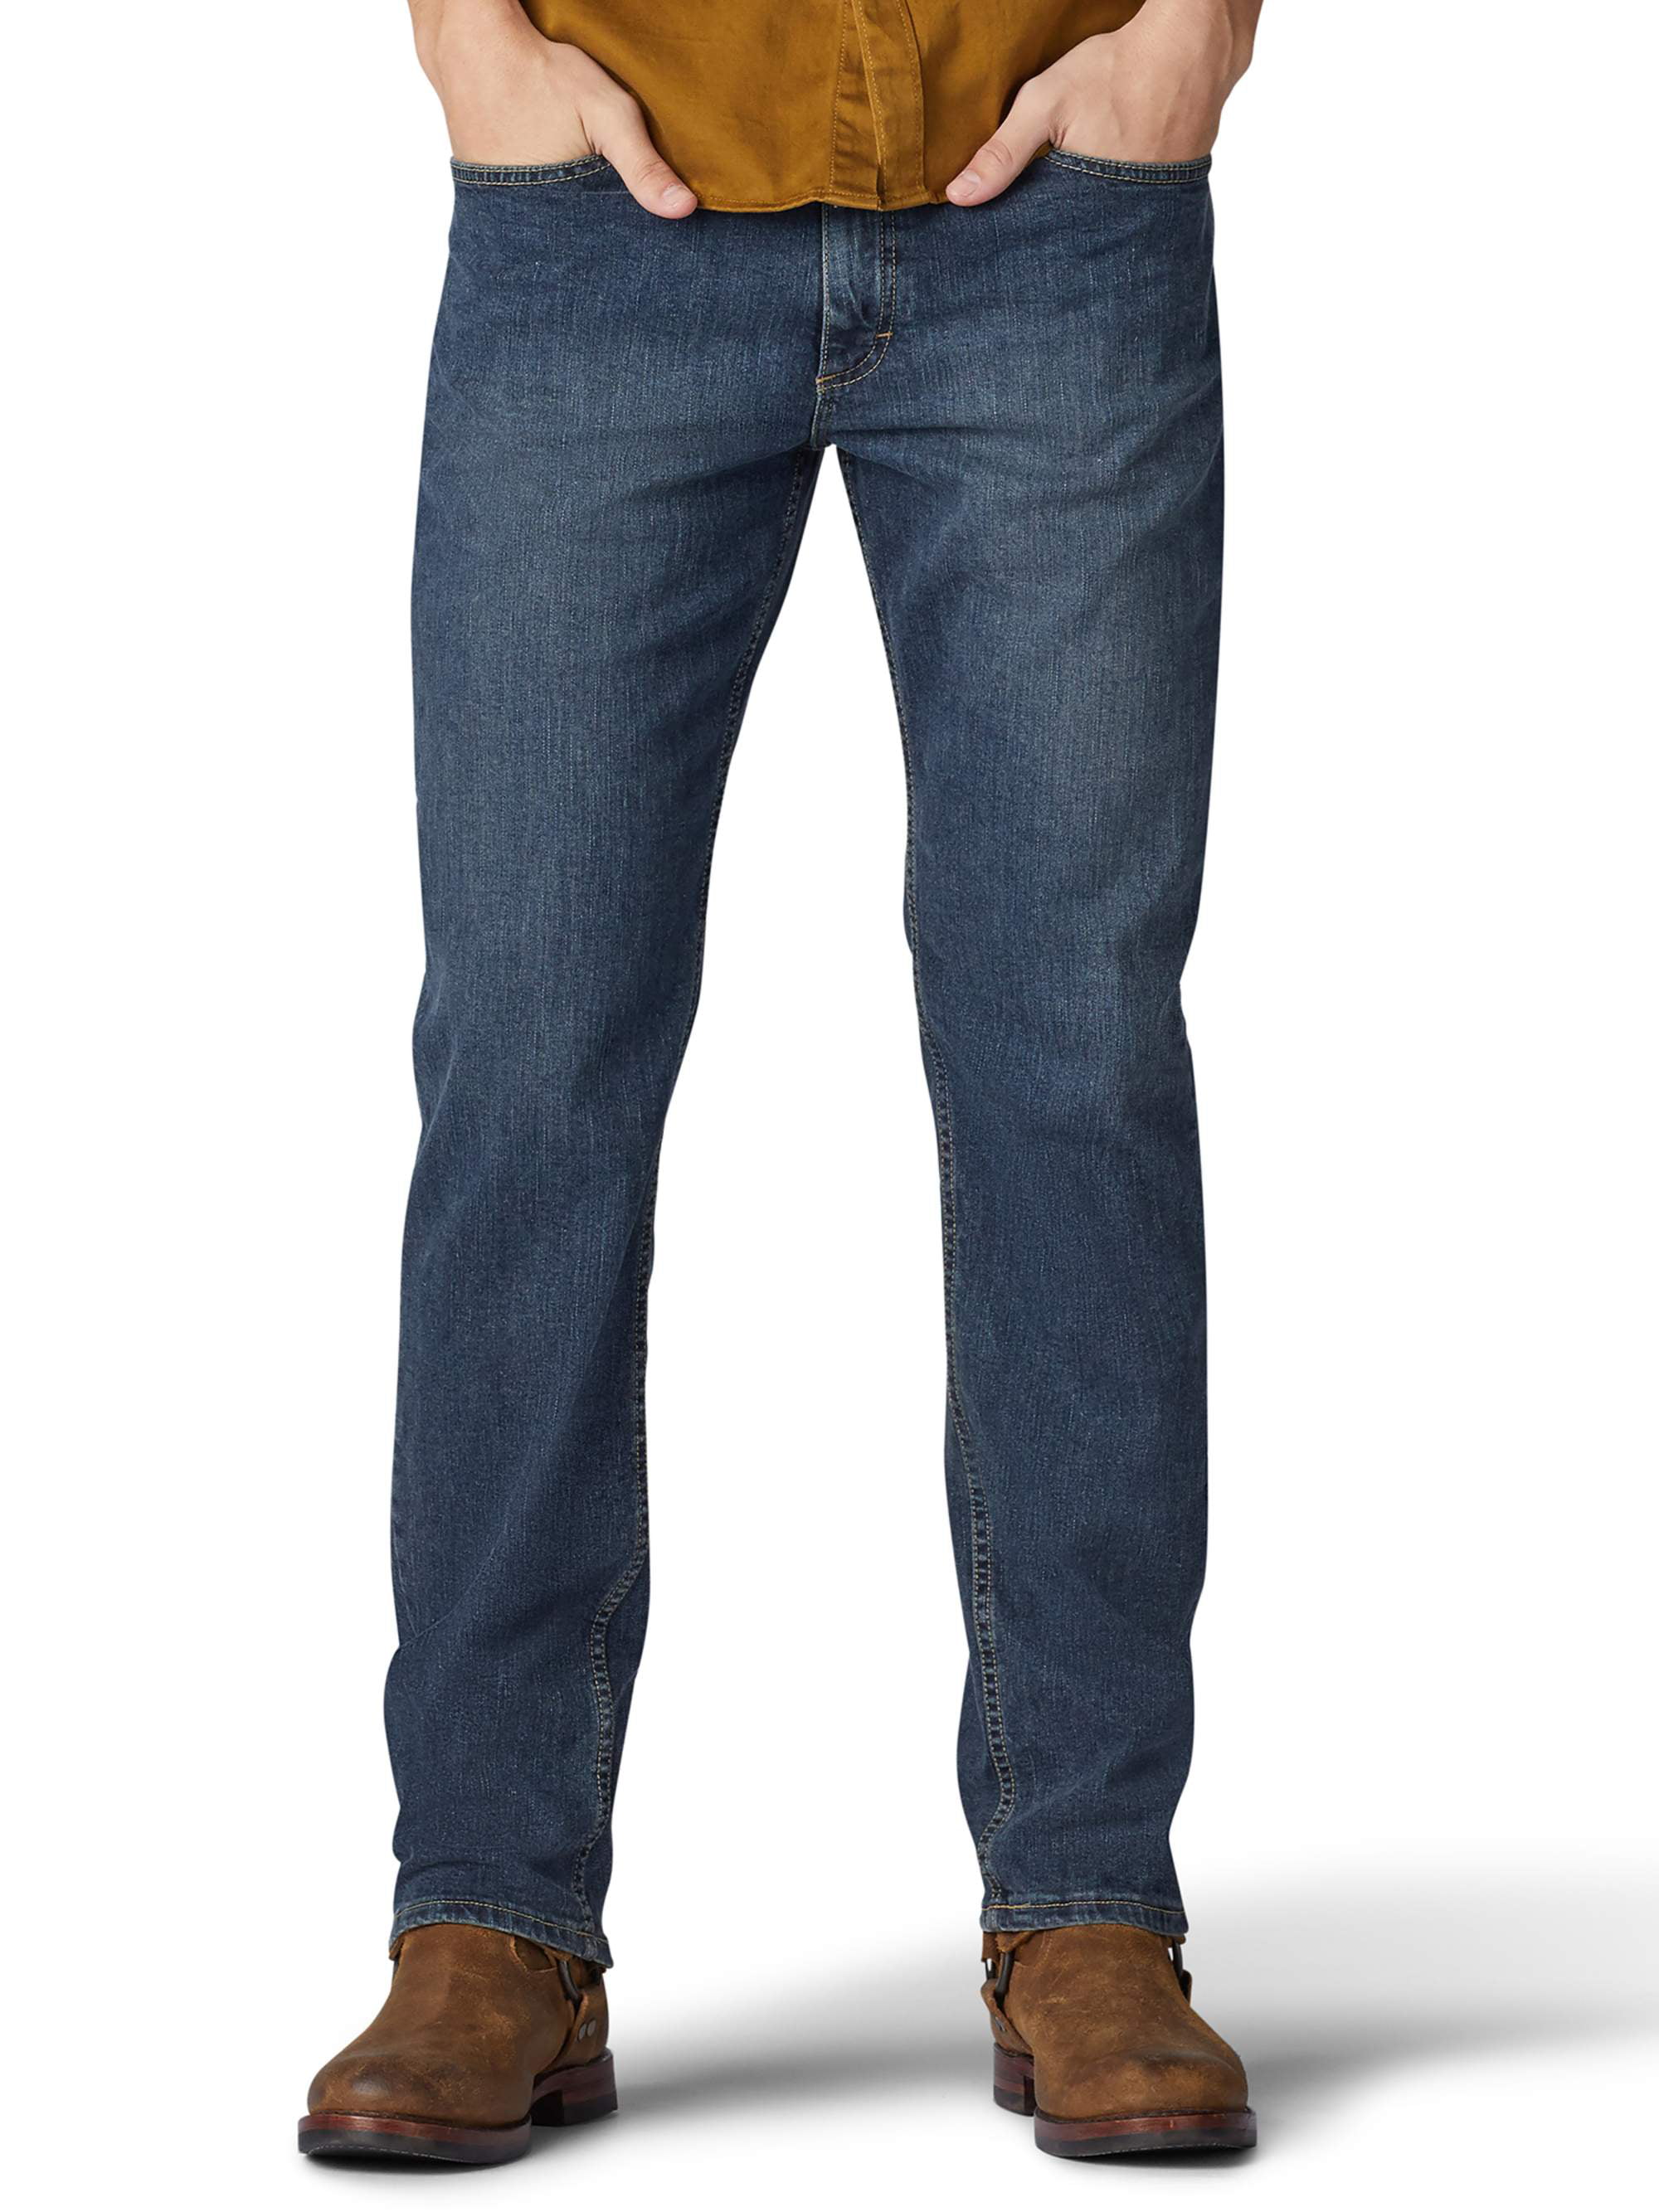 Lee - Lee Men's Premium Flex Regular Fit Jeans - Walmart.com - Walmart.com